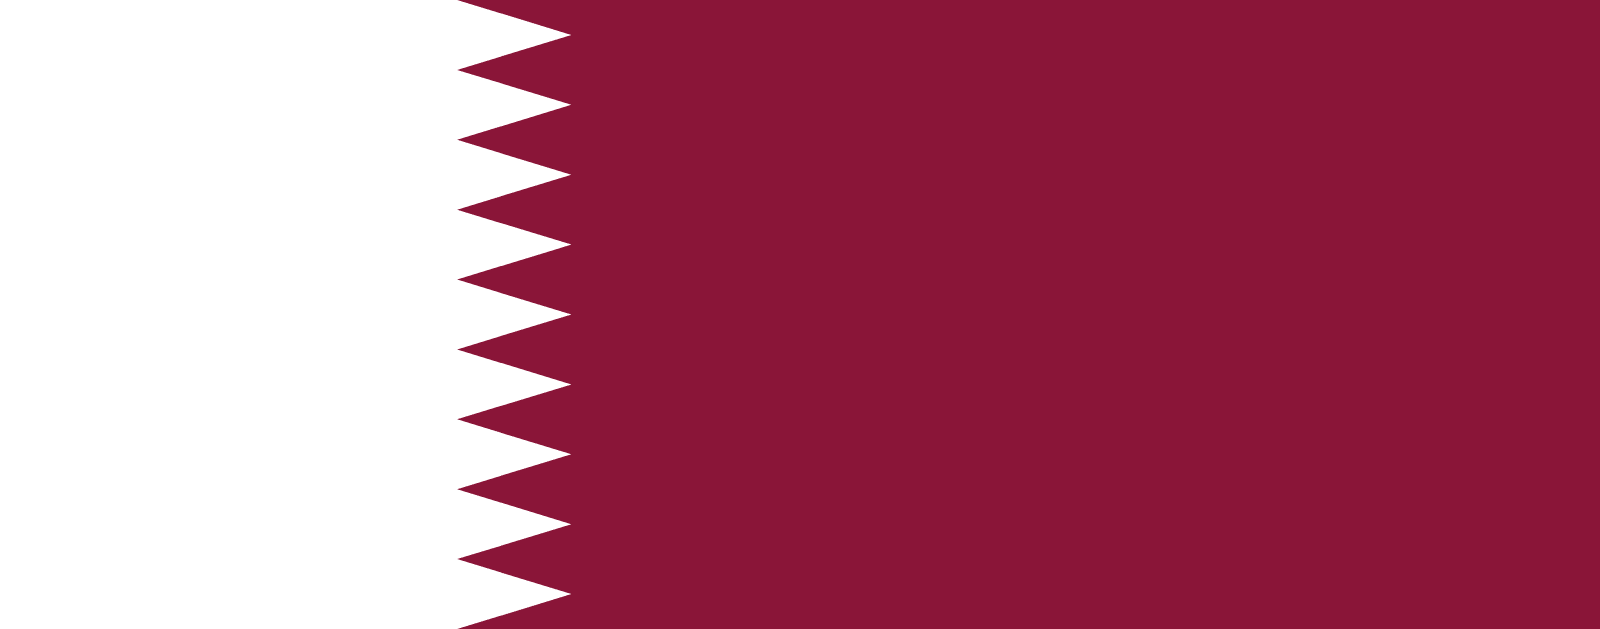 Flagge Katars | Welt-Flaggen.de